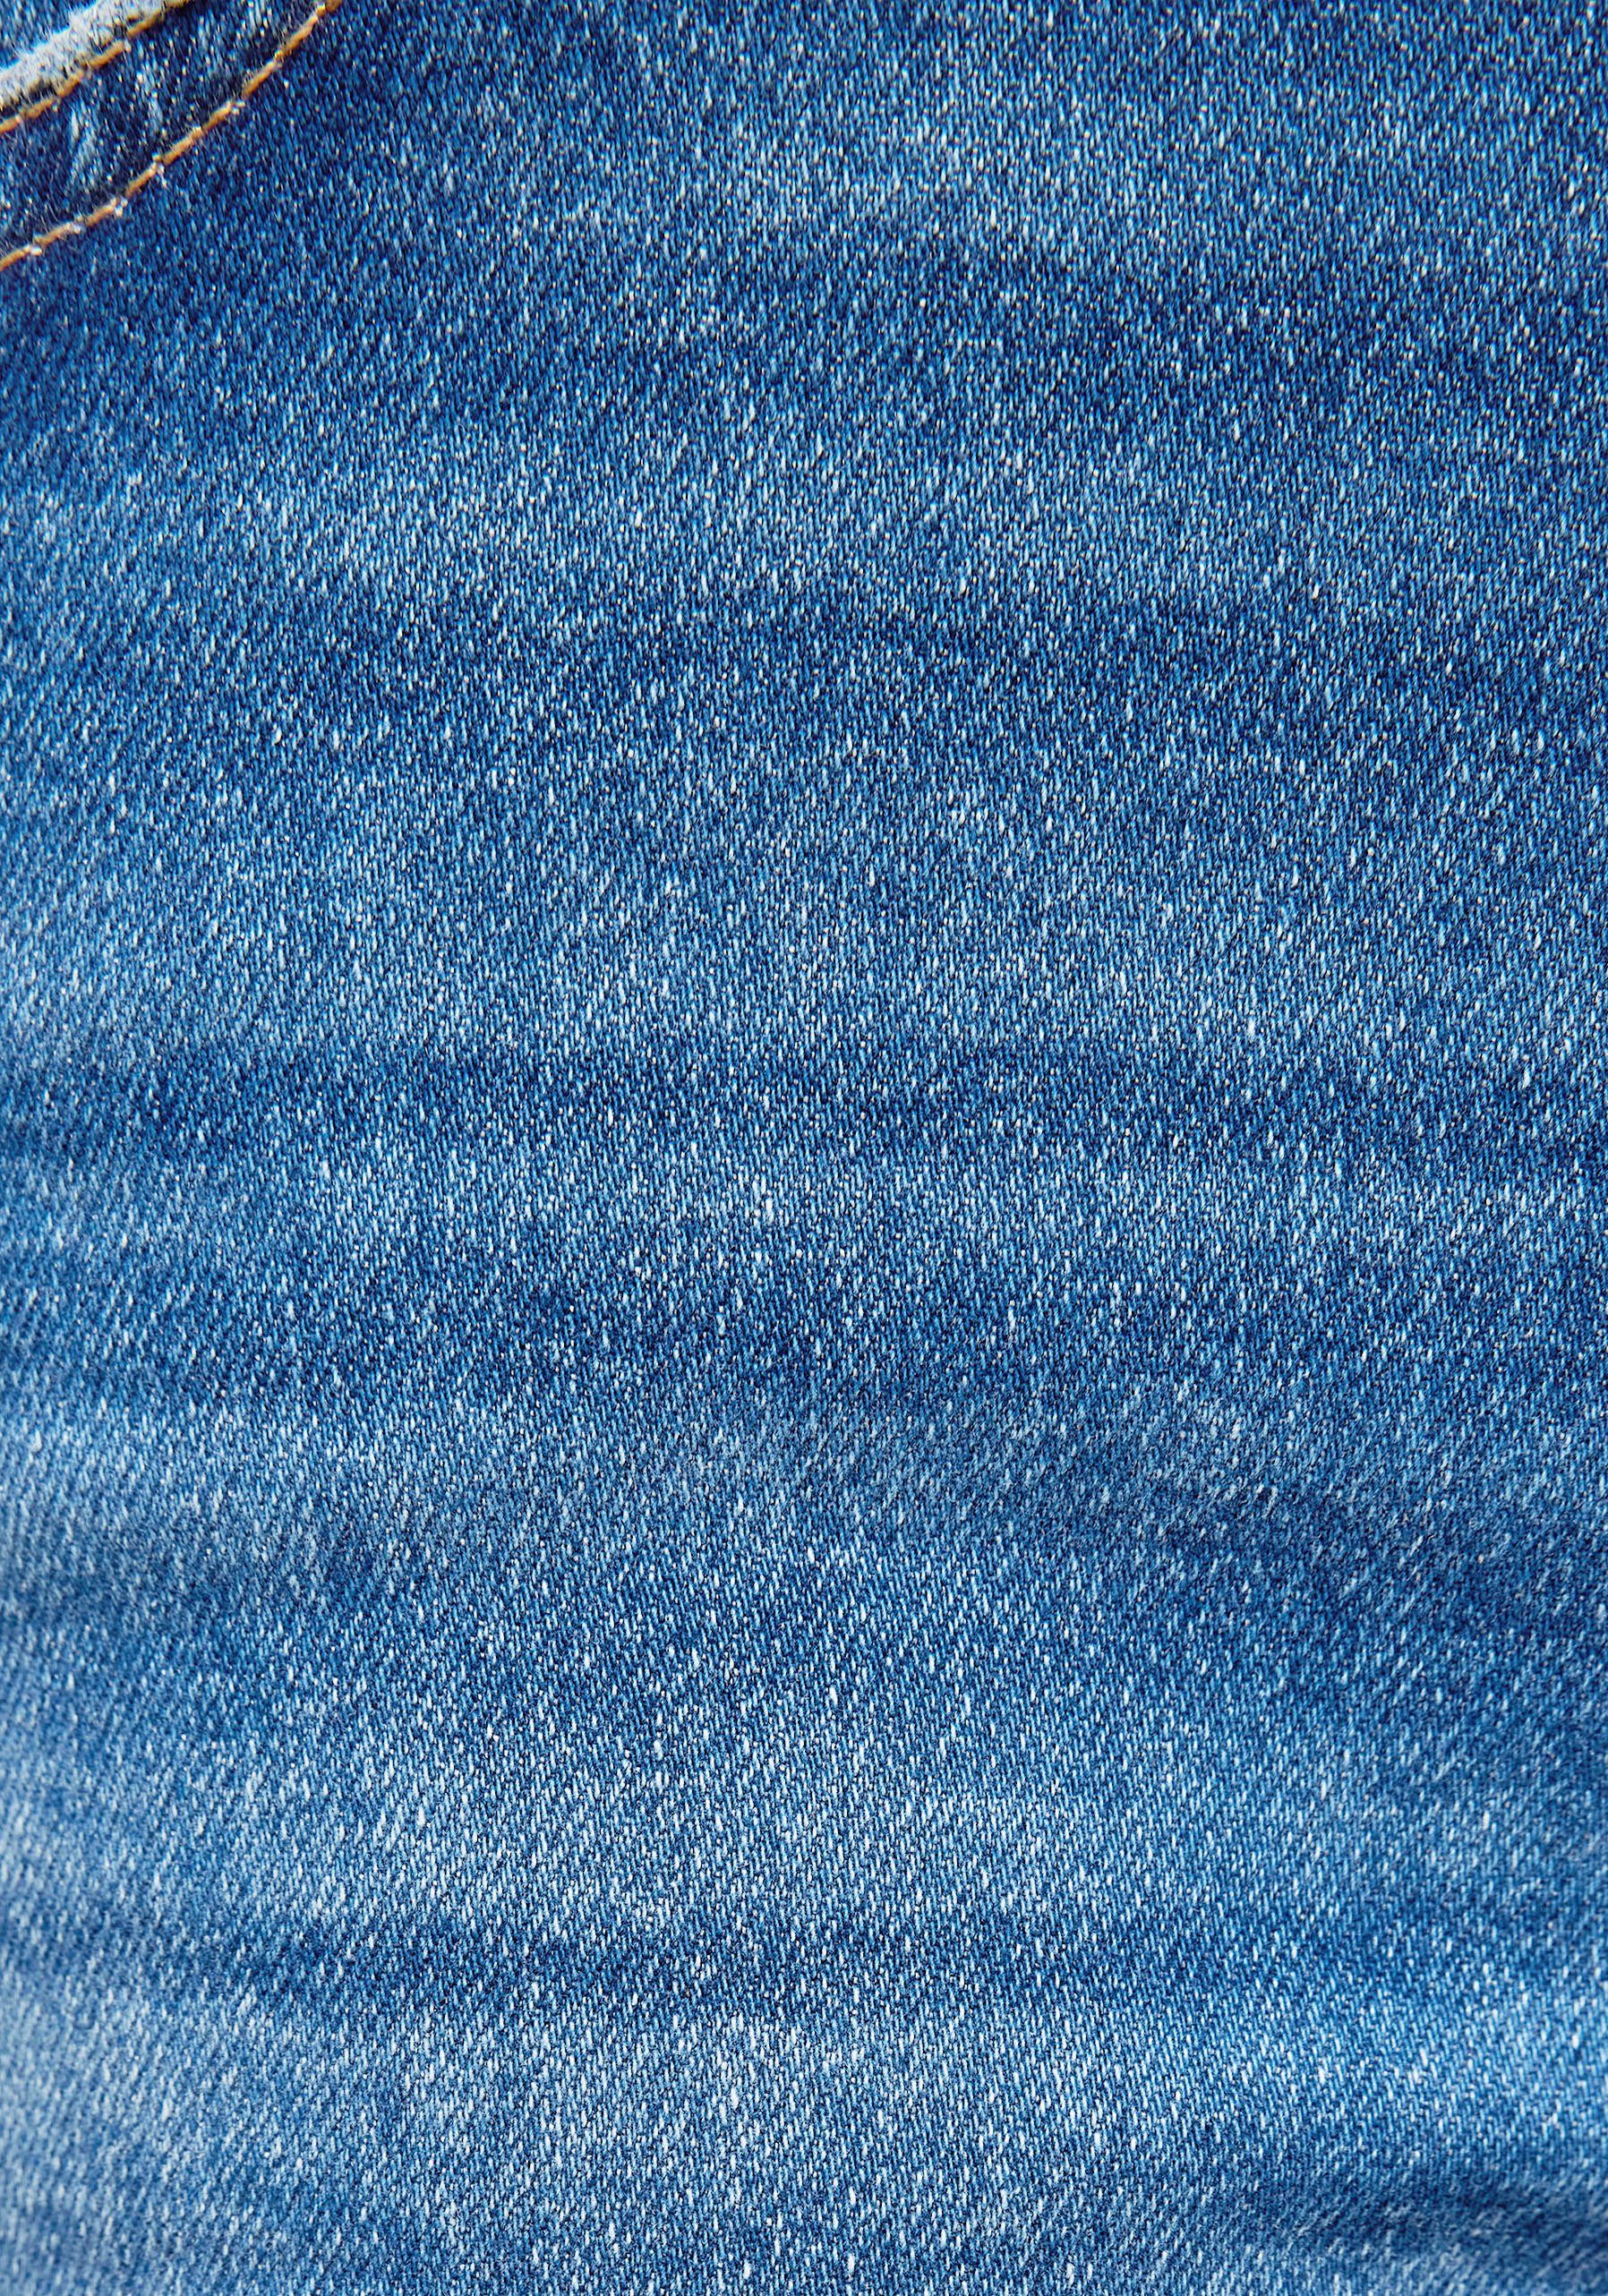 Mavi Slim-fit-Jeans trageangenehmer Stretchdenim blue) Verarbeitung blue dank denim hochwertiger mid (denim